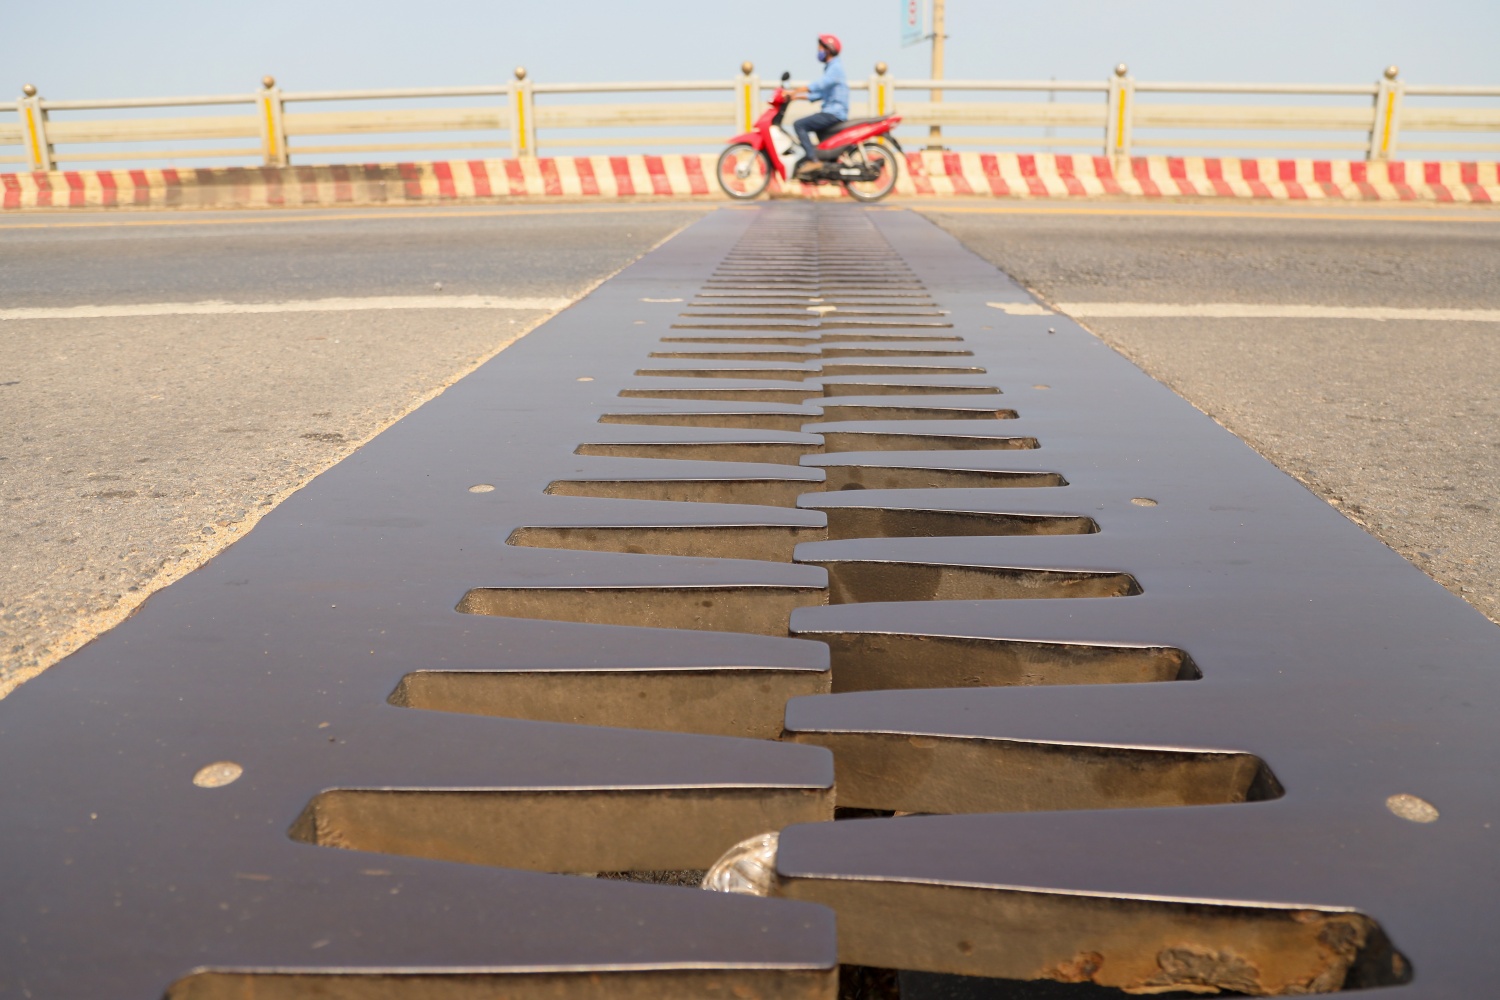 Quảng Ngãi: Cấm xe lưu thông qua cầu Trà Khúc 2 trong 50 ngày để sửa chữa